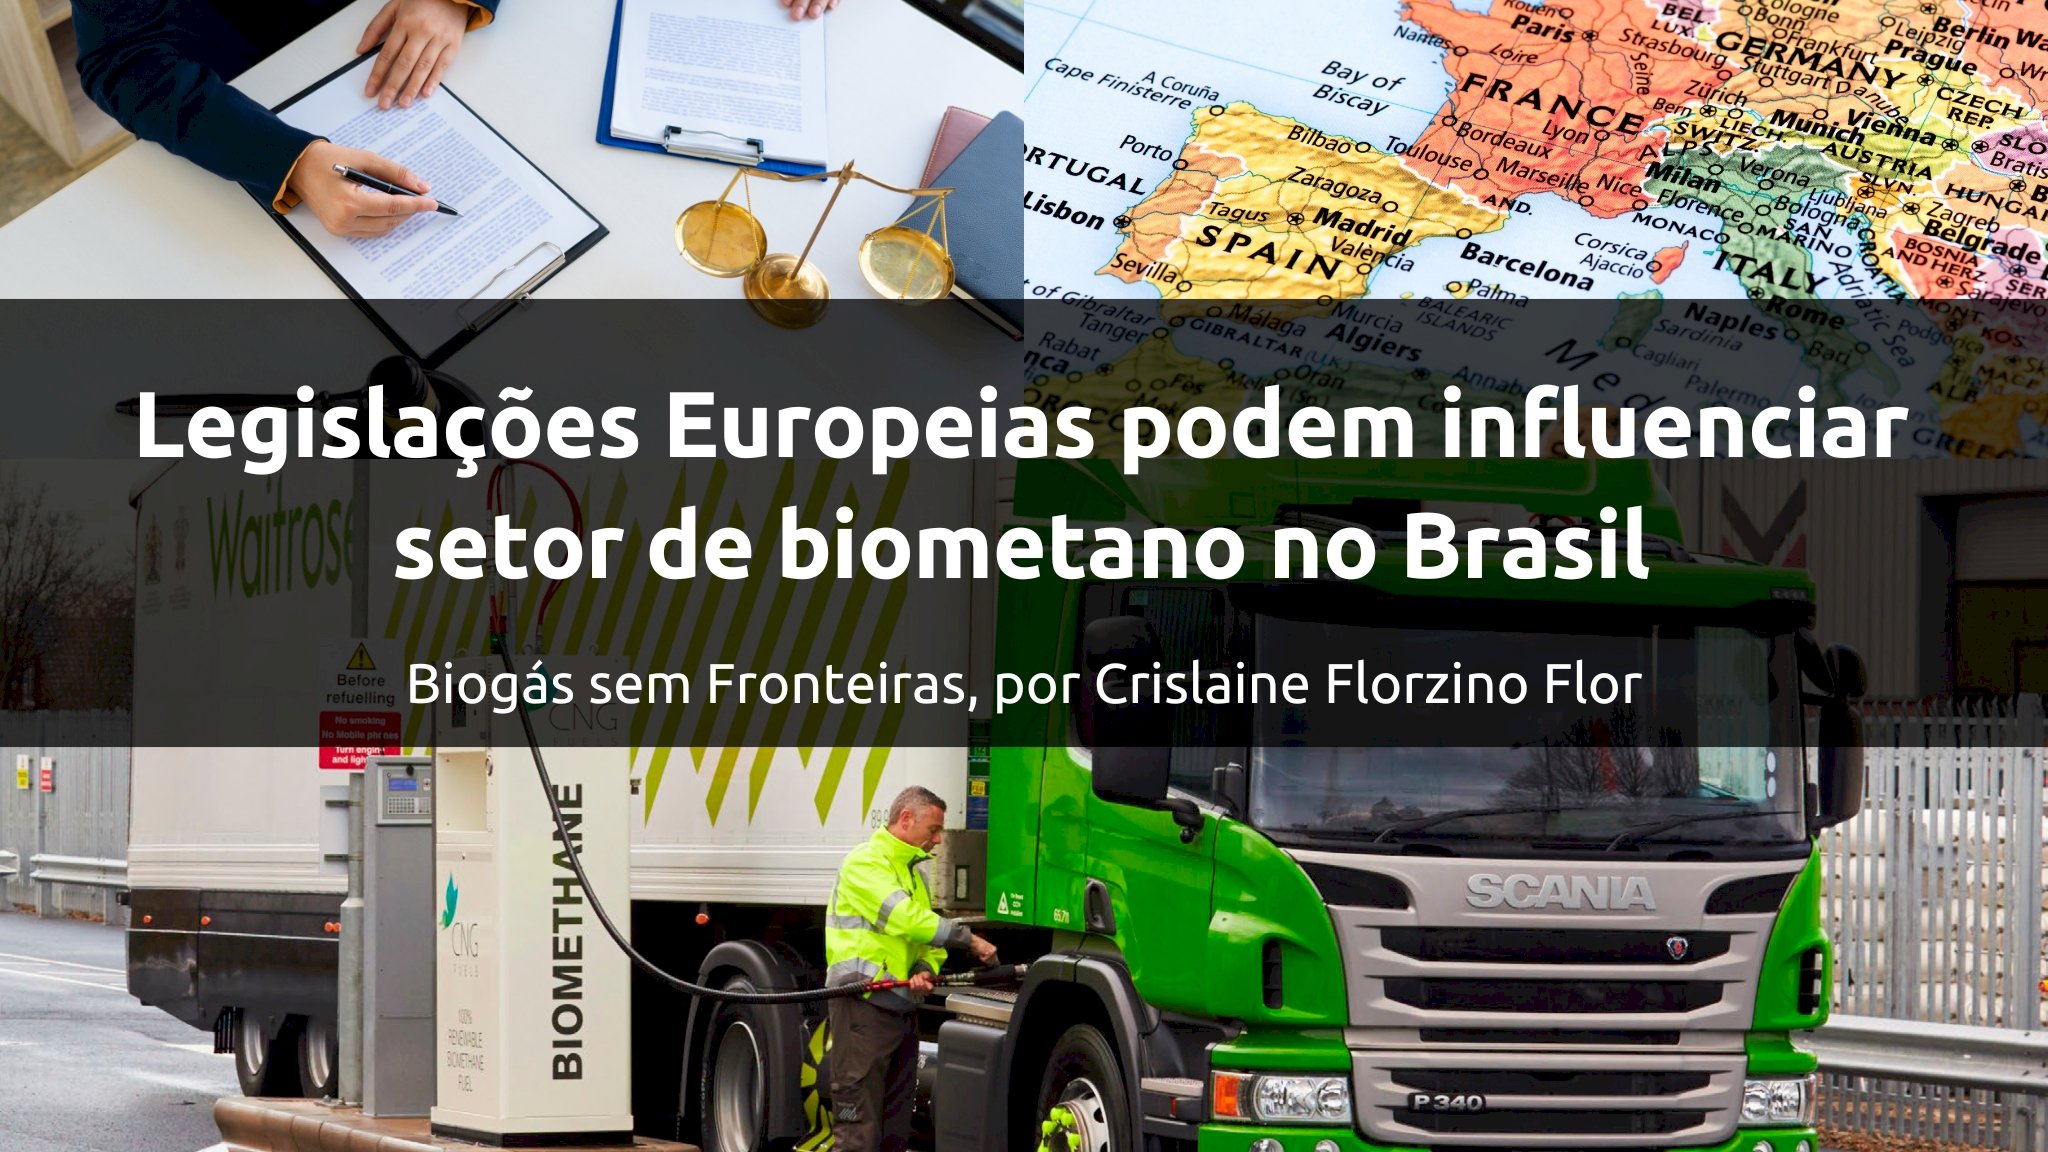 Legislações europeias podem influenciar setor de biometano no Brasil